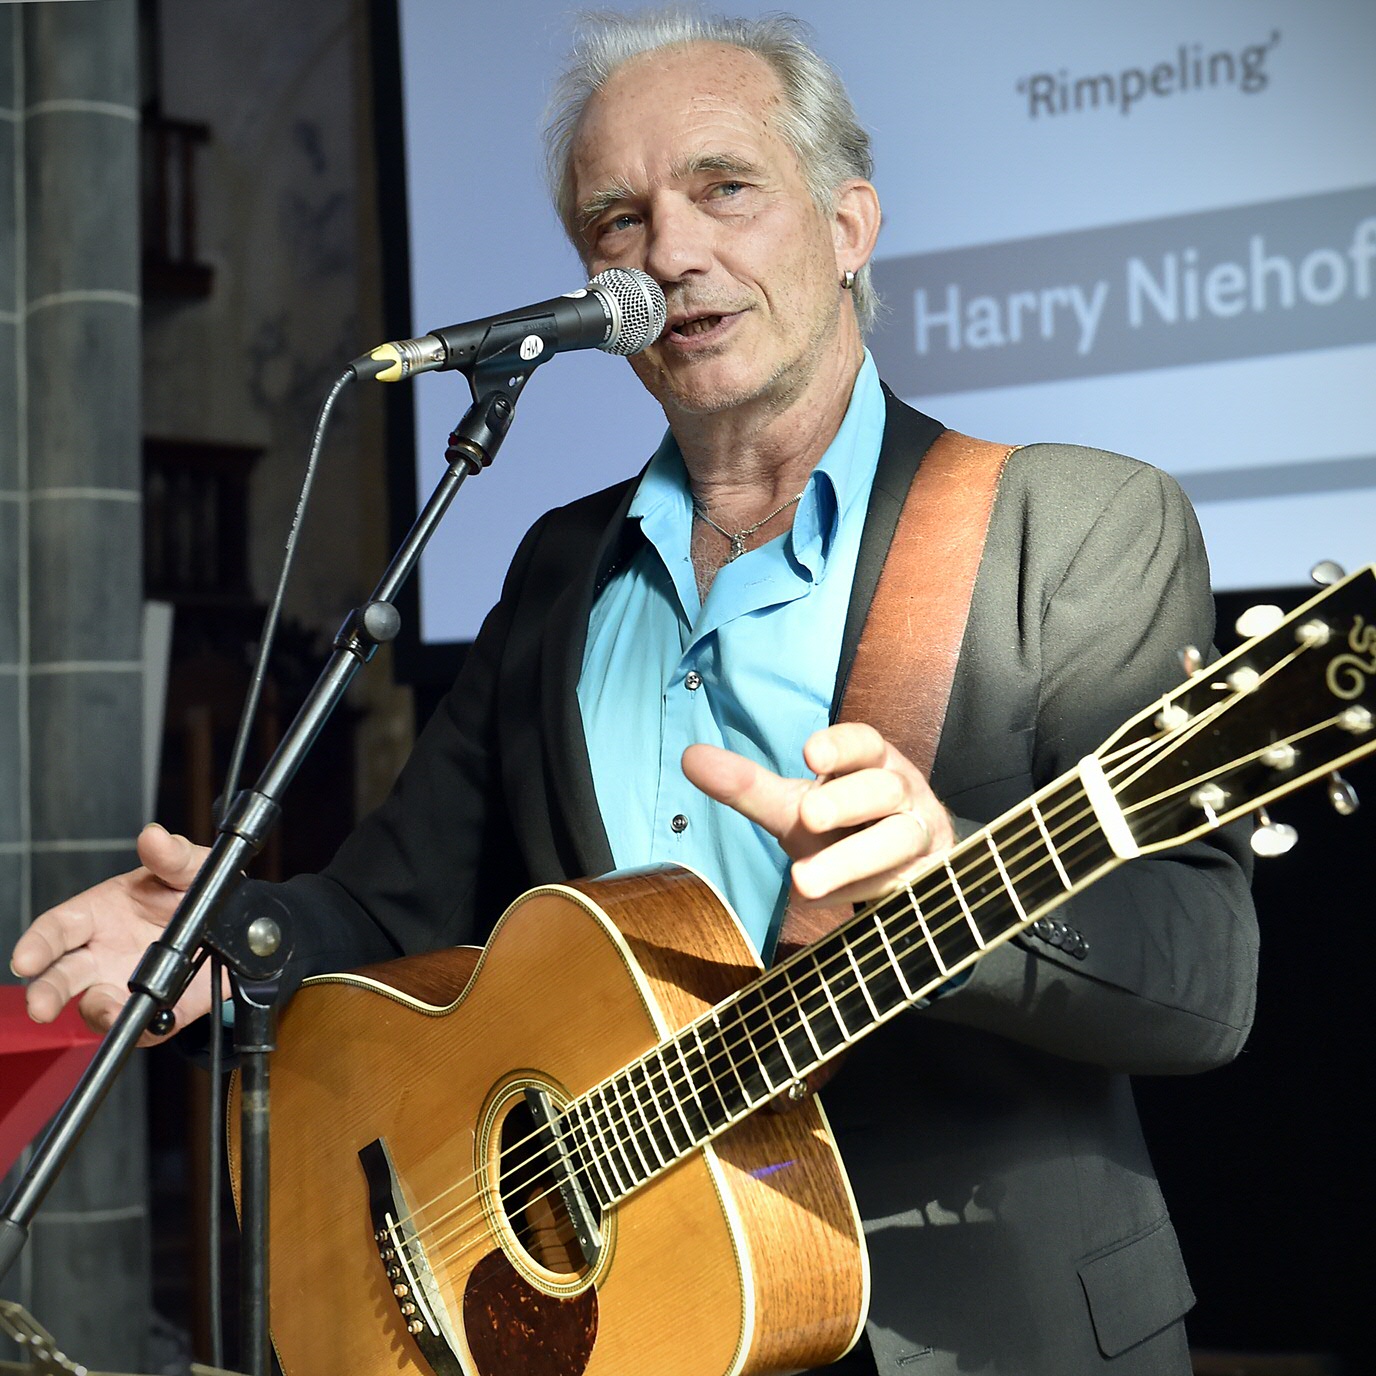 Harry Niehof voorzag de middag van muzikale omlijstingHarry Niehof